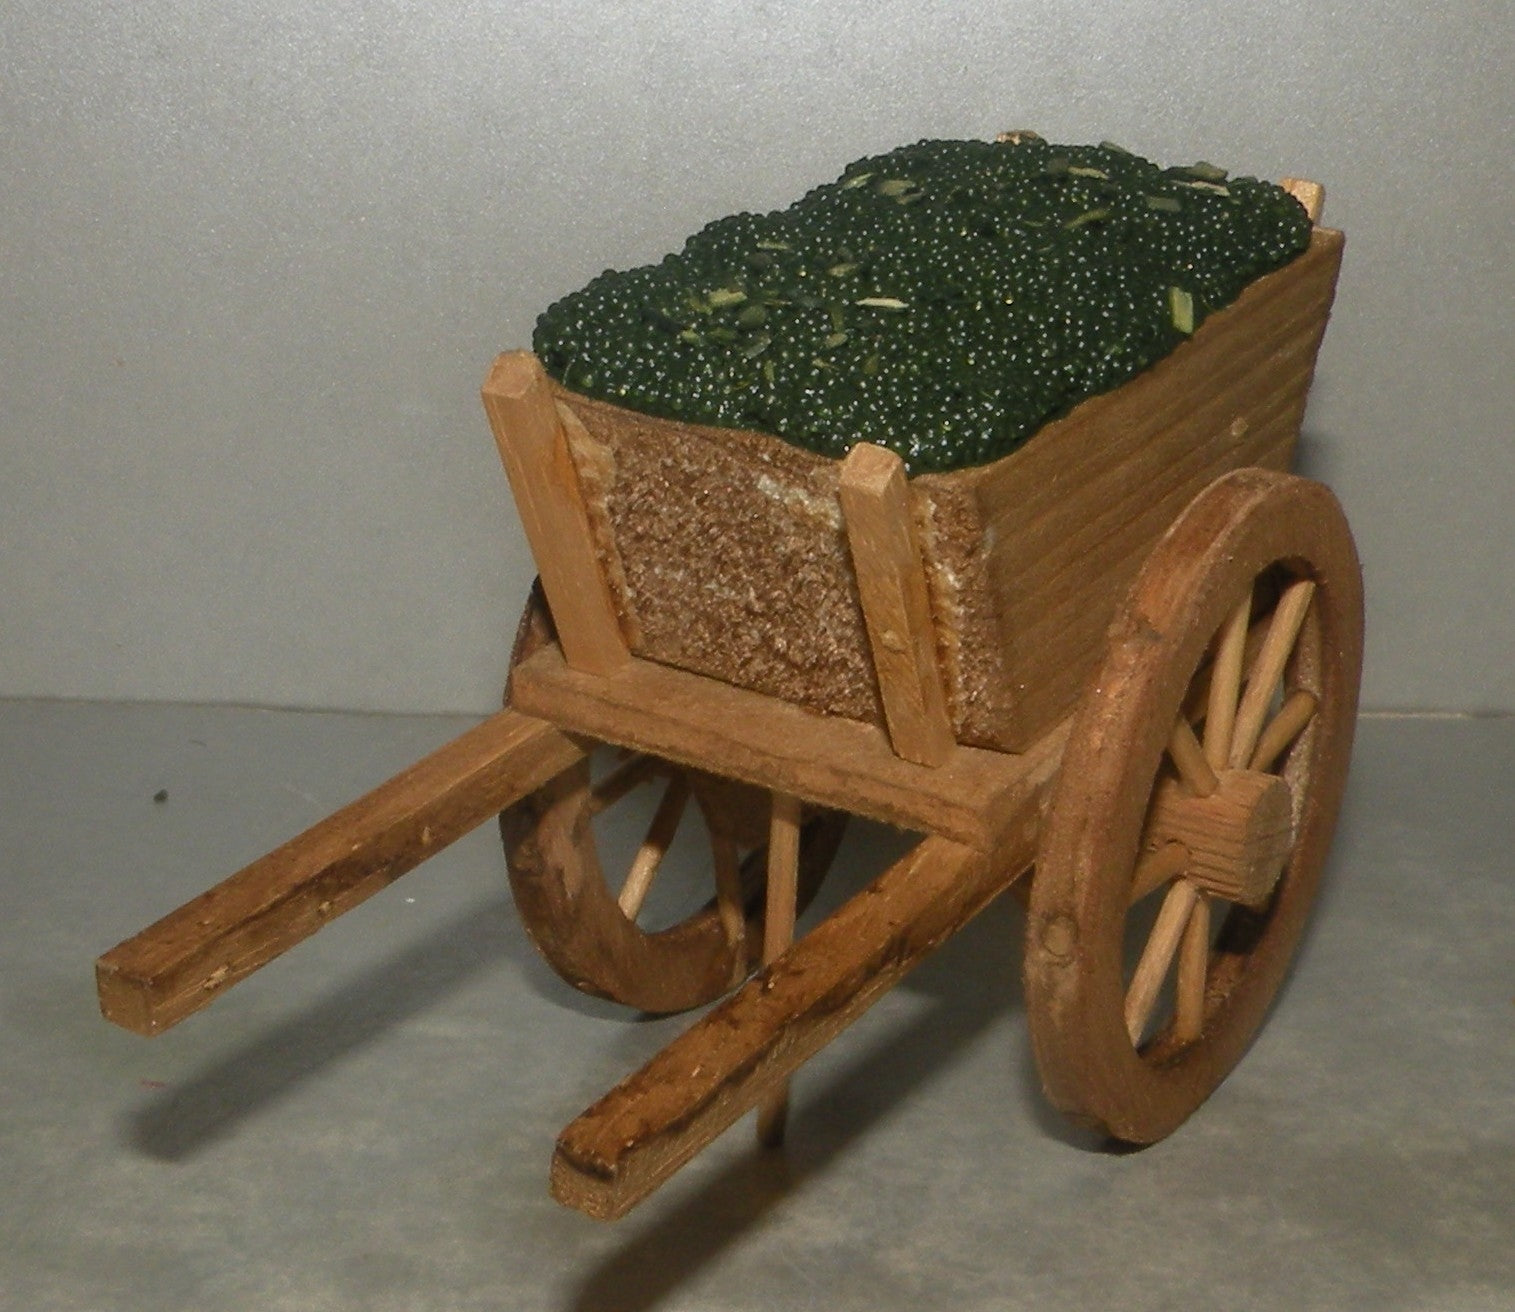 Cart of Olives  Didier 10 - 7 - 6 Cm